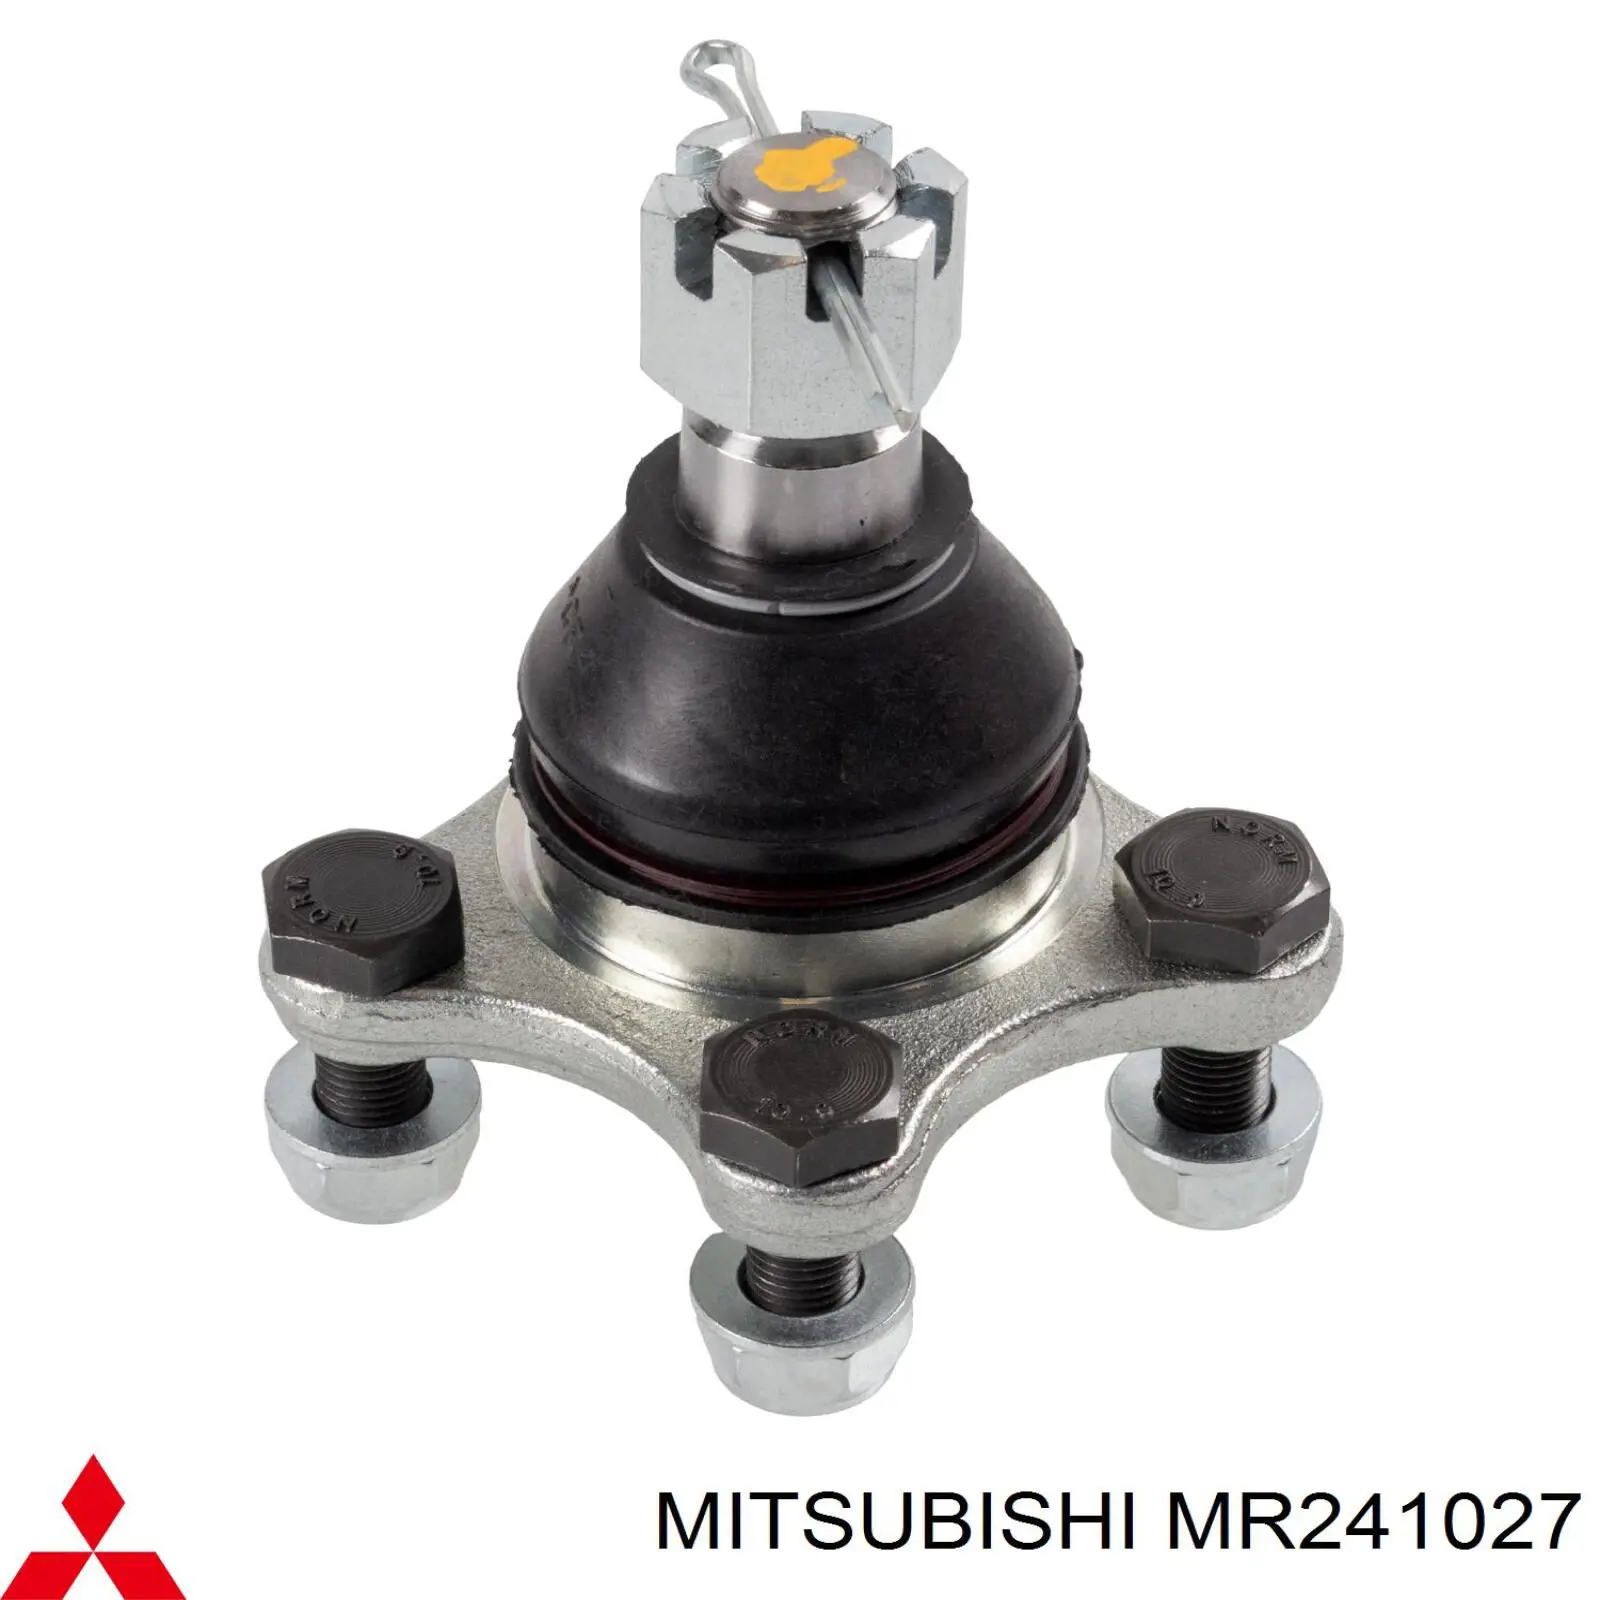 MR241027 Mitsubishi rótula de suspensión inferior